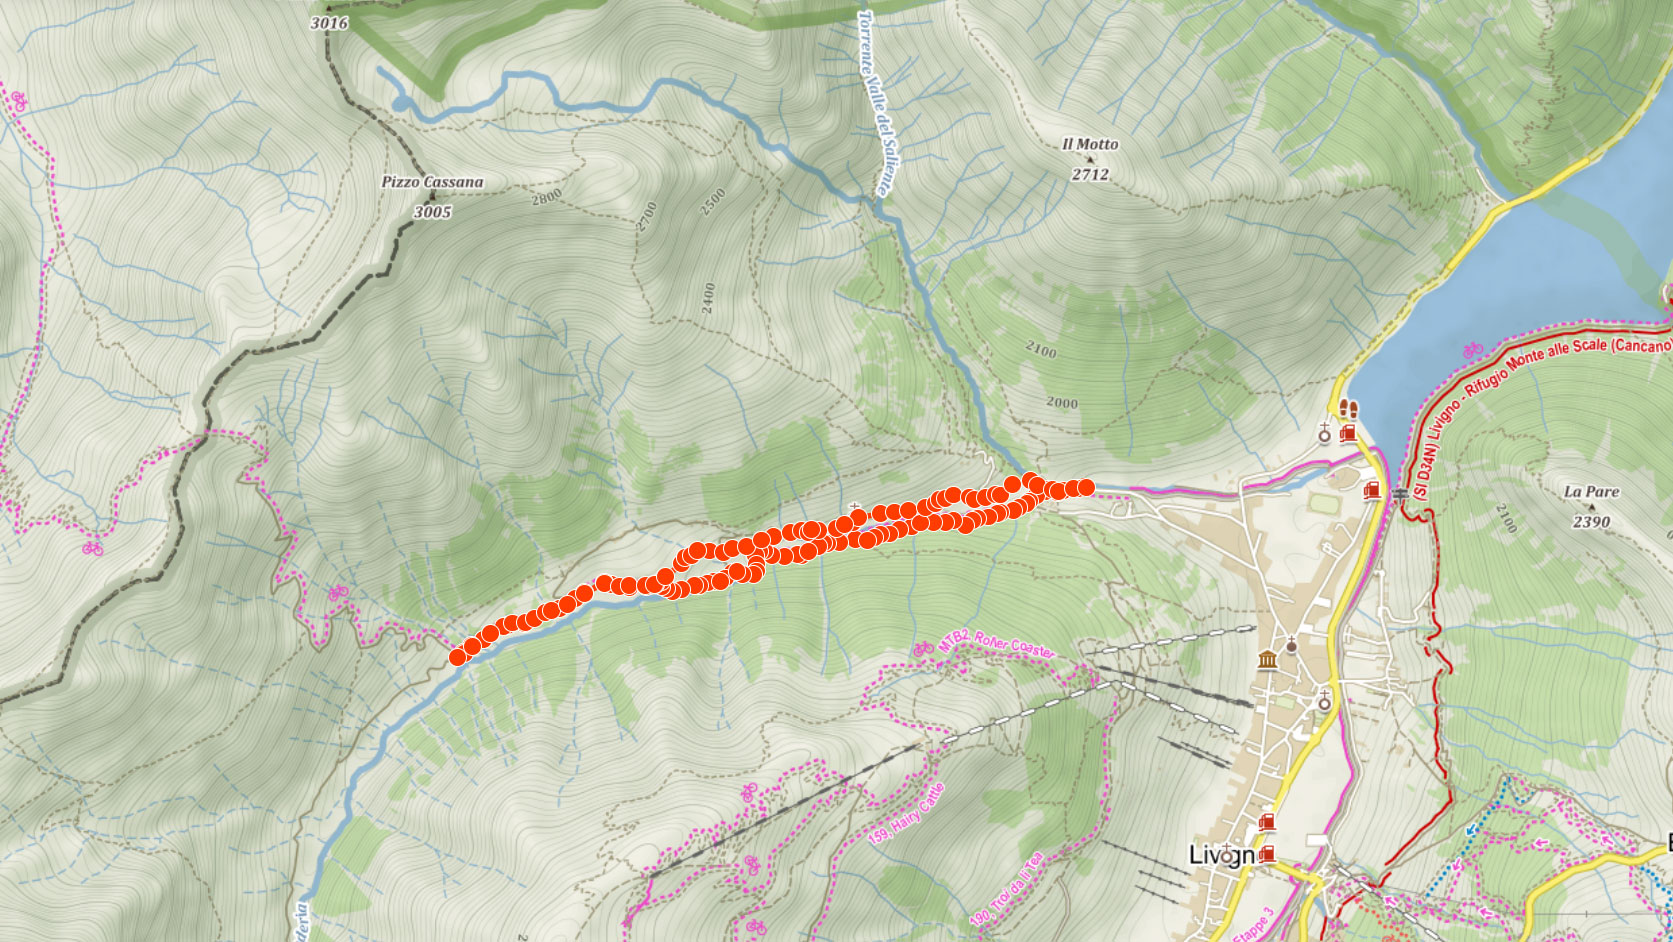 Mapa výletu s kočárkem údolím Federia v Livignu